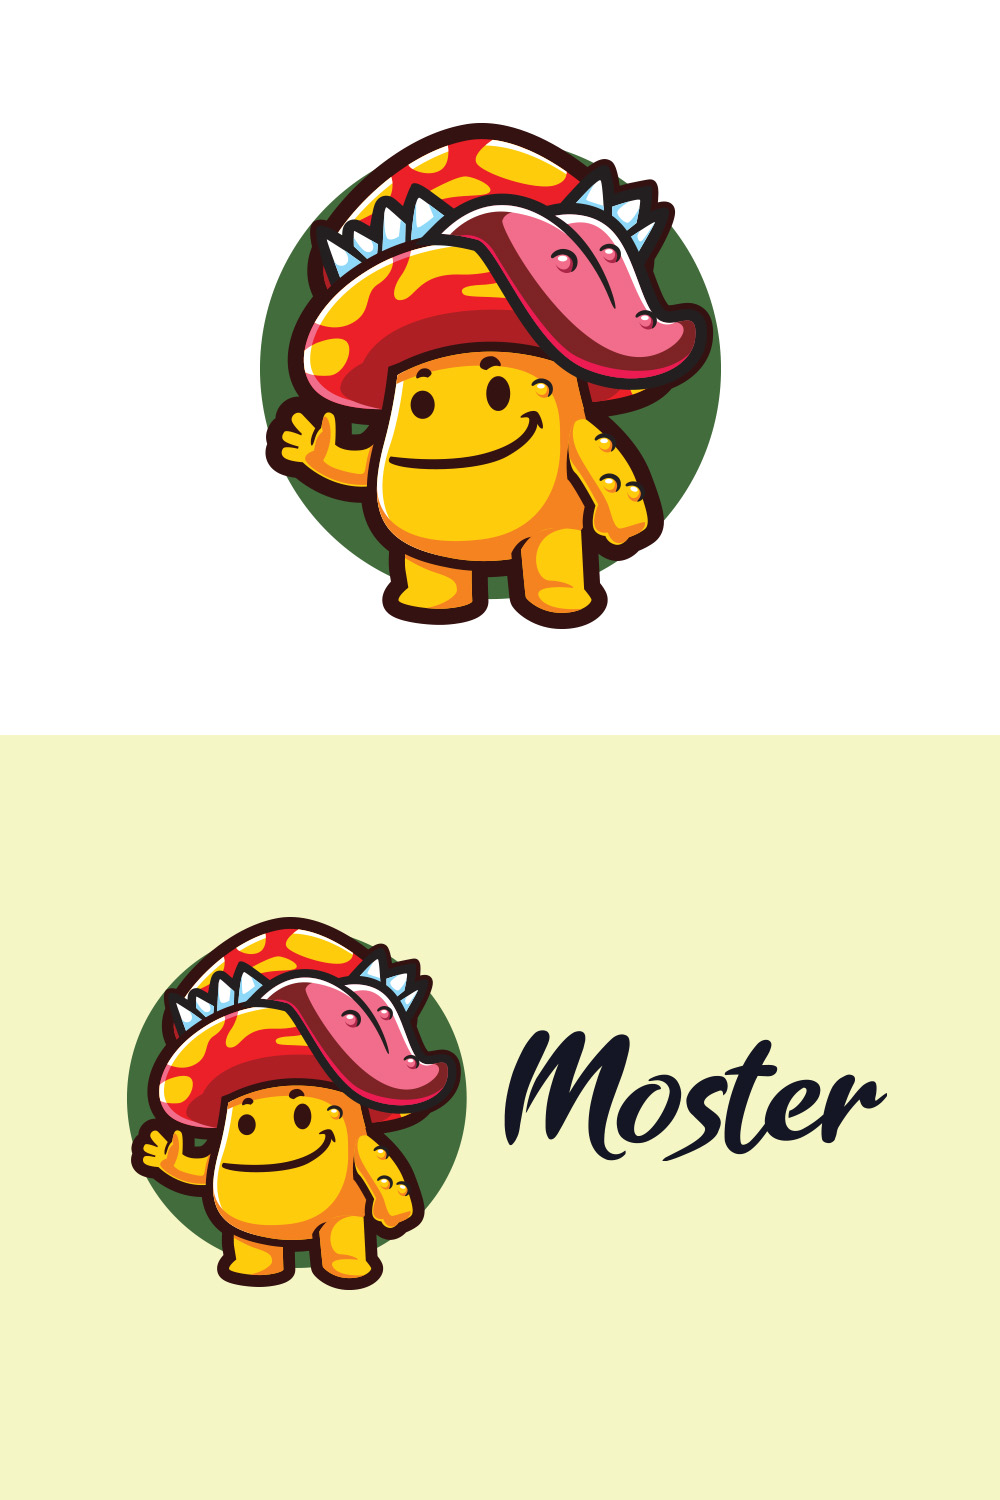 Mushroom Monster Character Mascot Logo pinterest preview image.